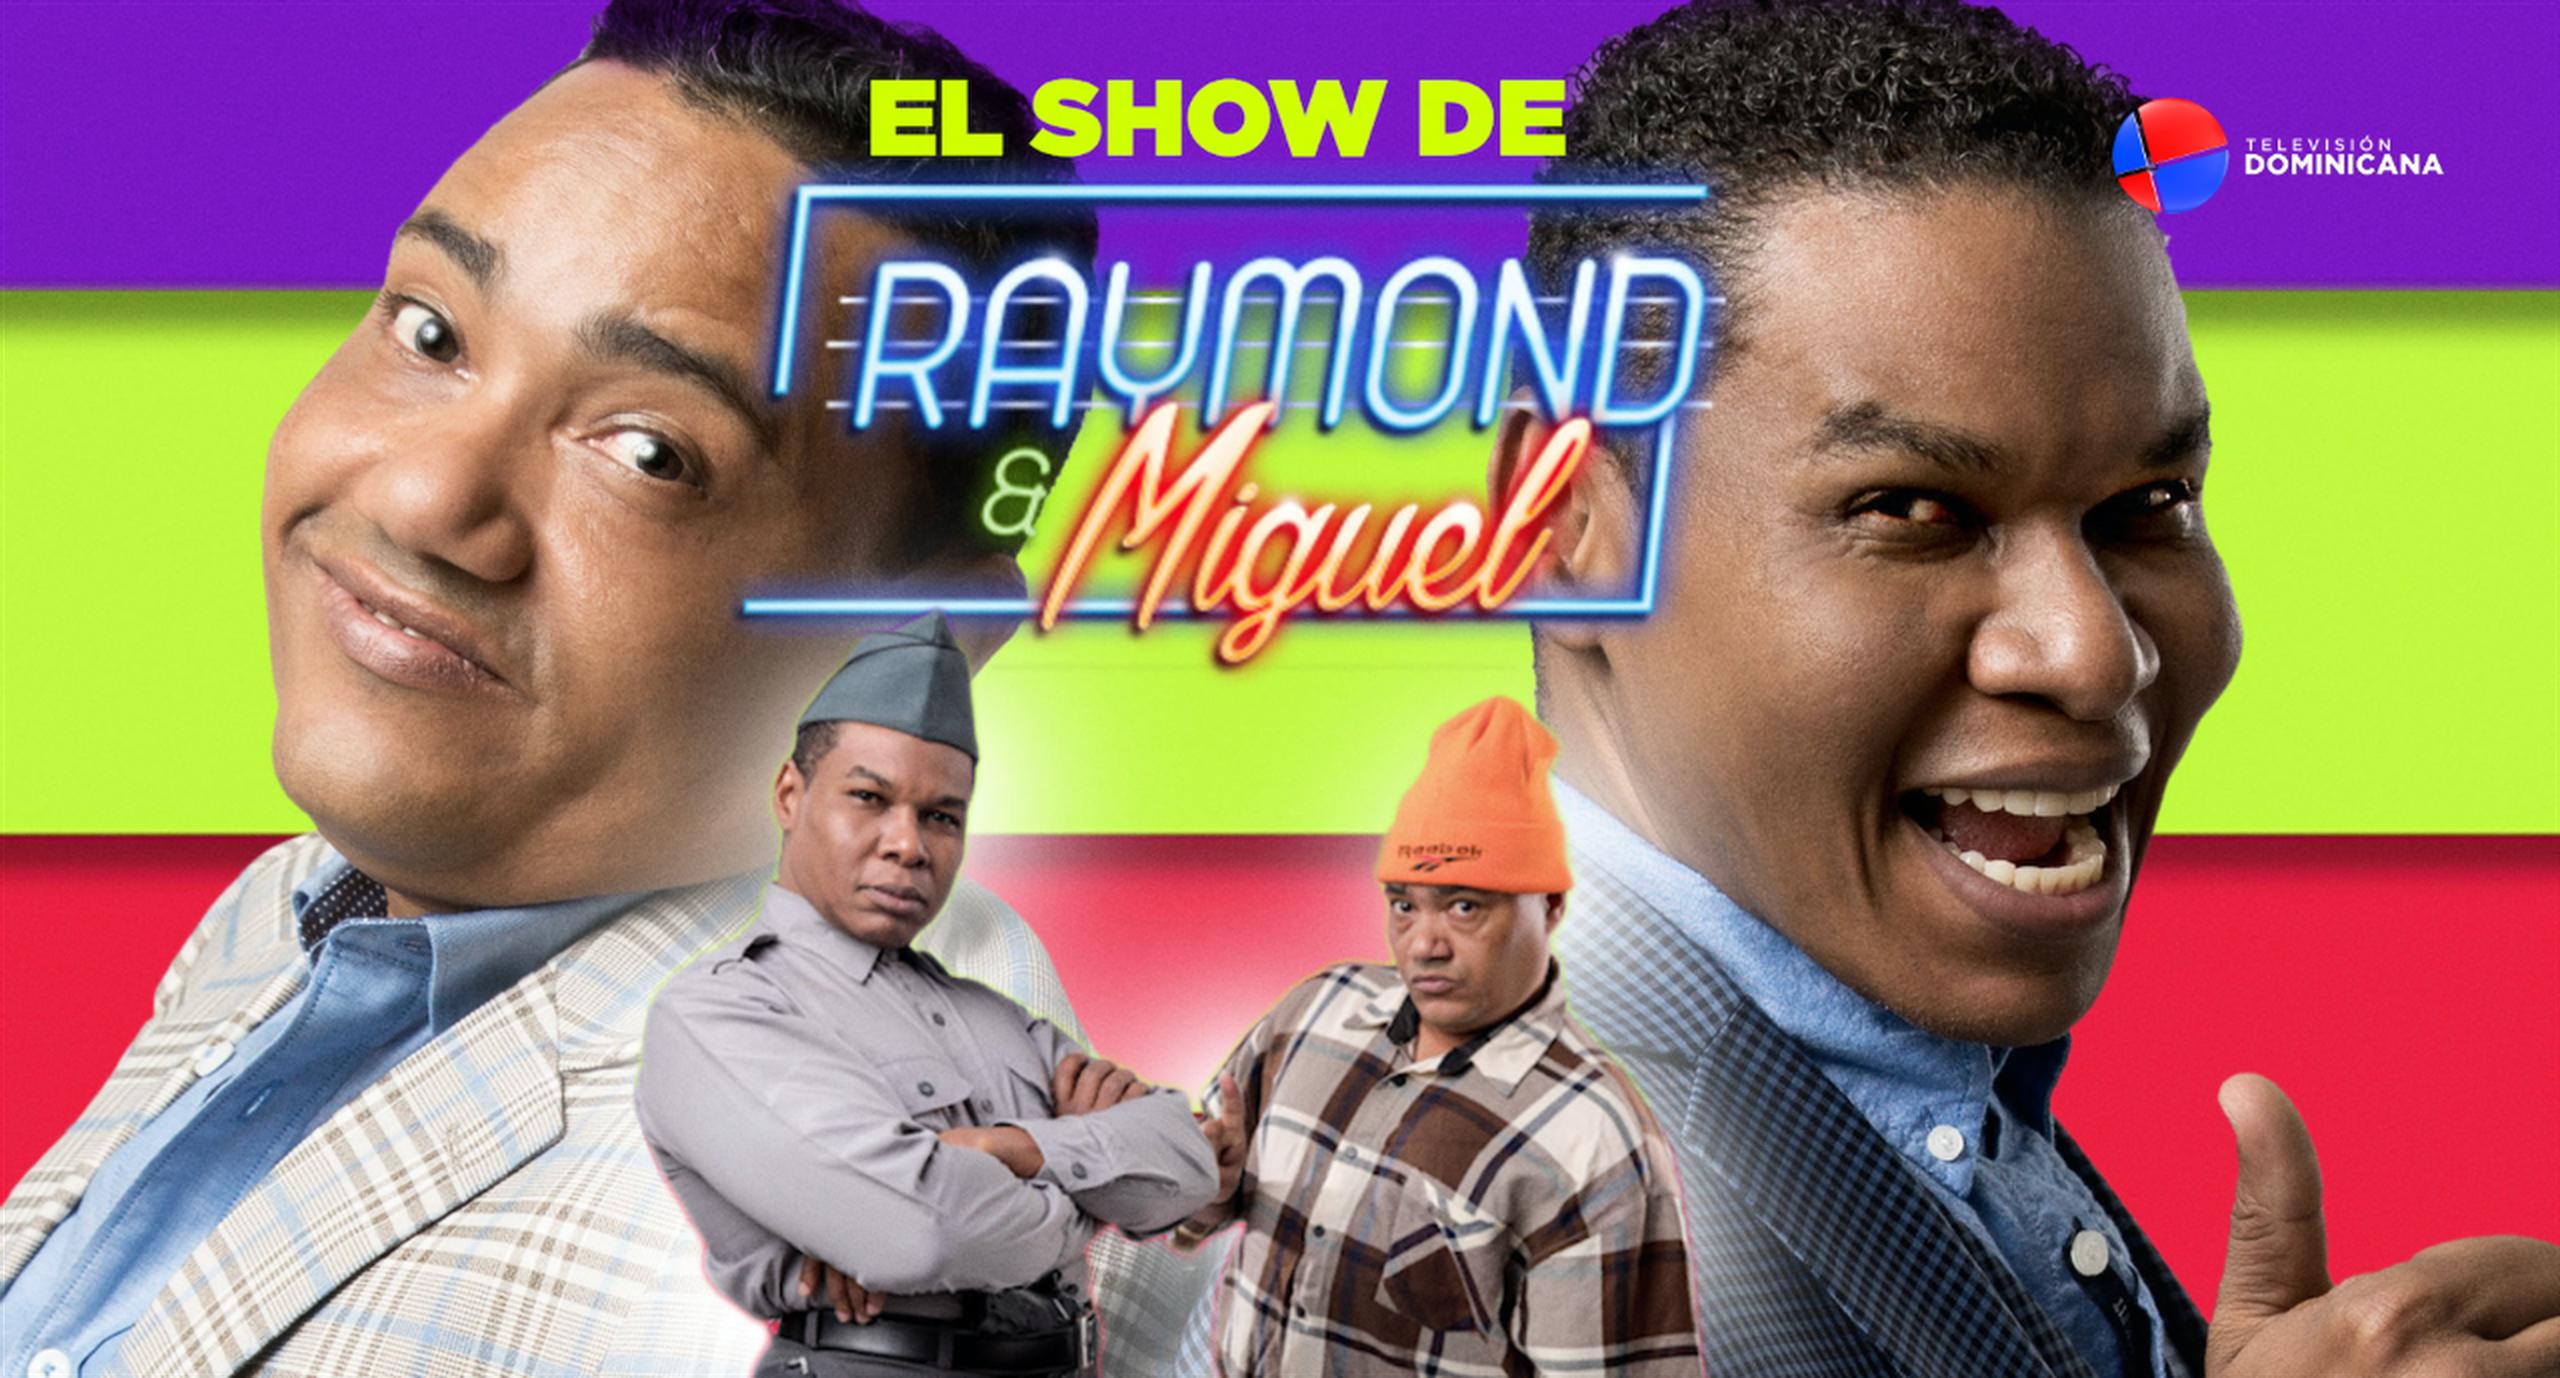 Televisión Dominicana presenta programas como El Show de Raymond y Miguel.